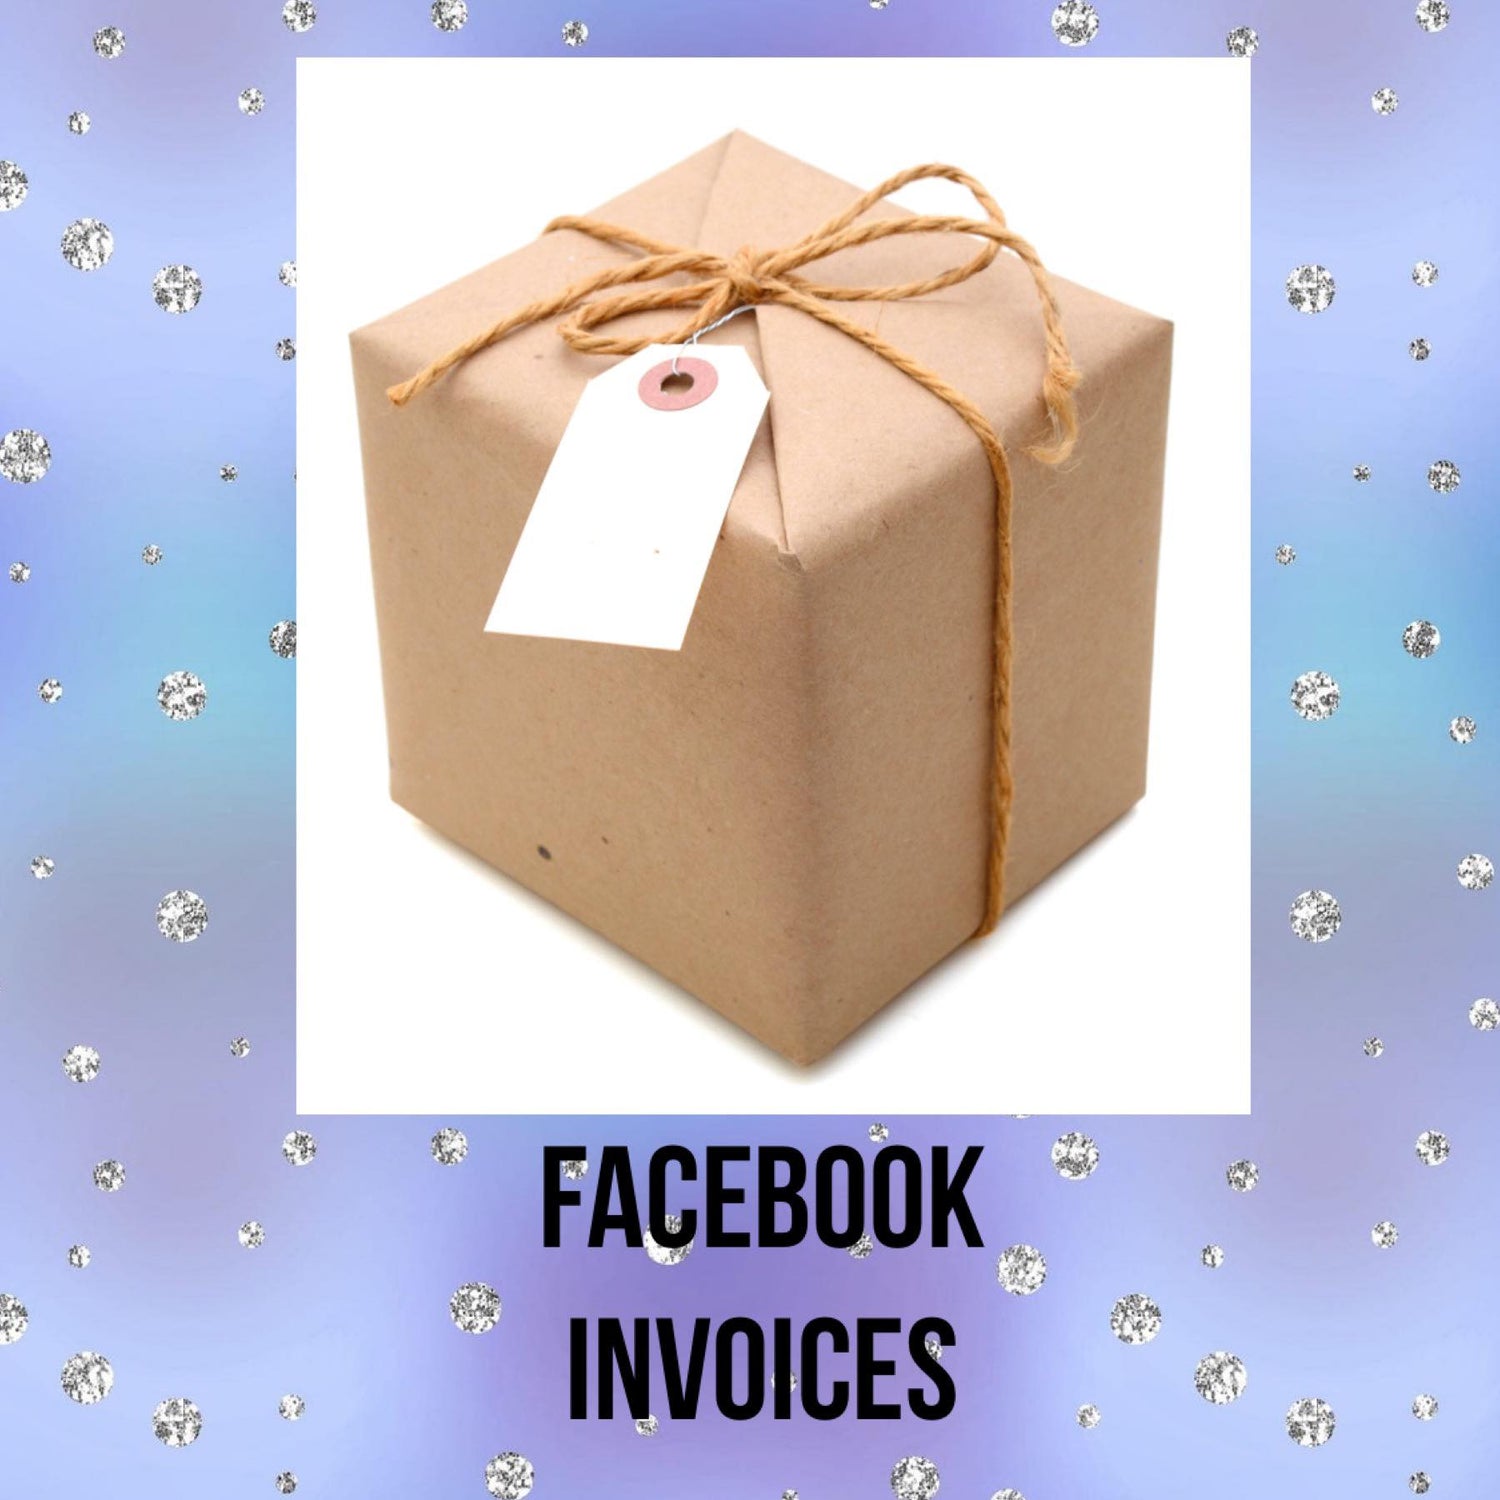 Facebook Invoices